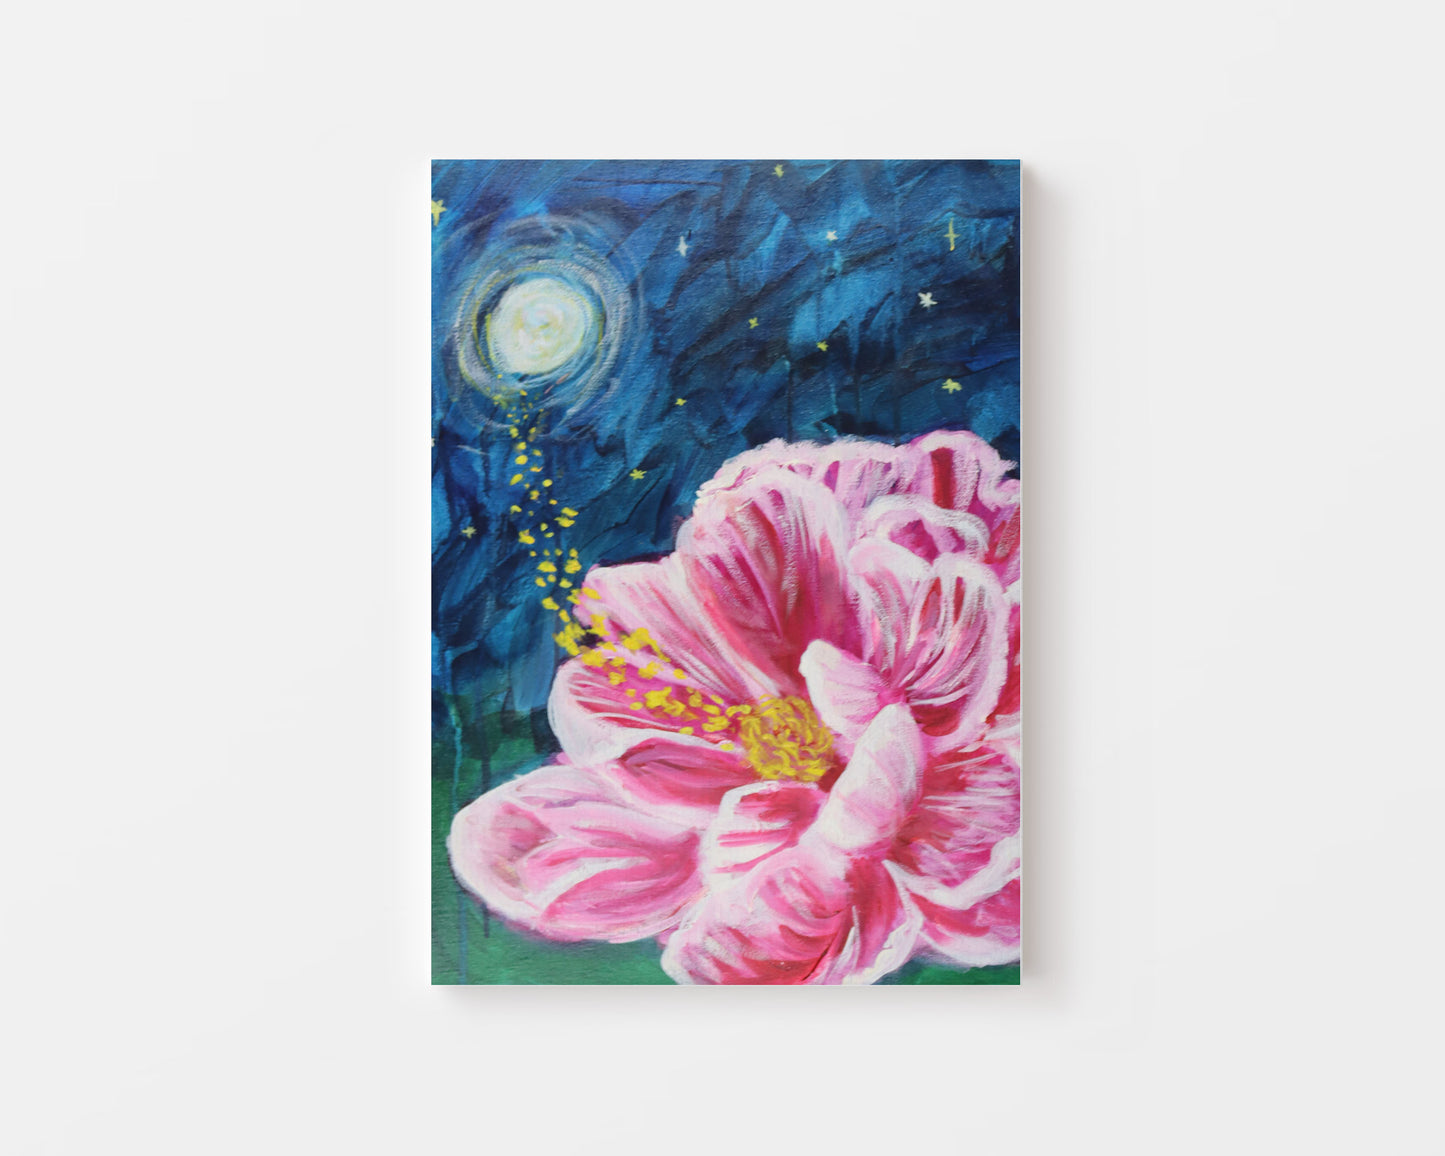 Midnight Flower - Oil - 16x20